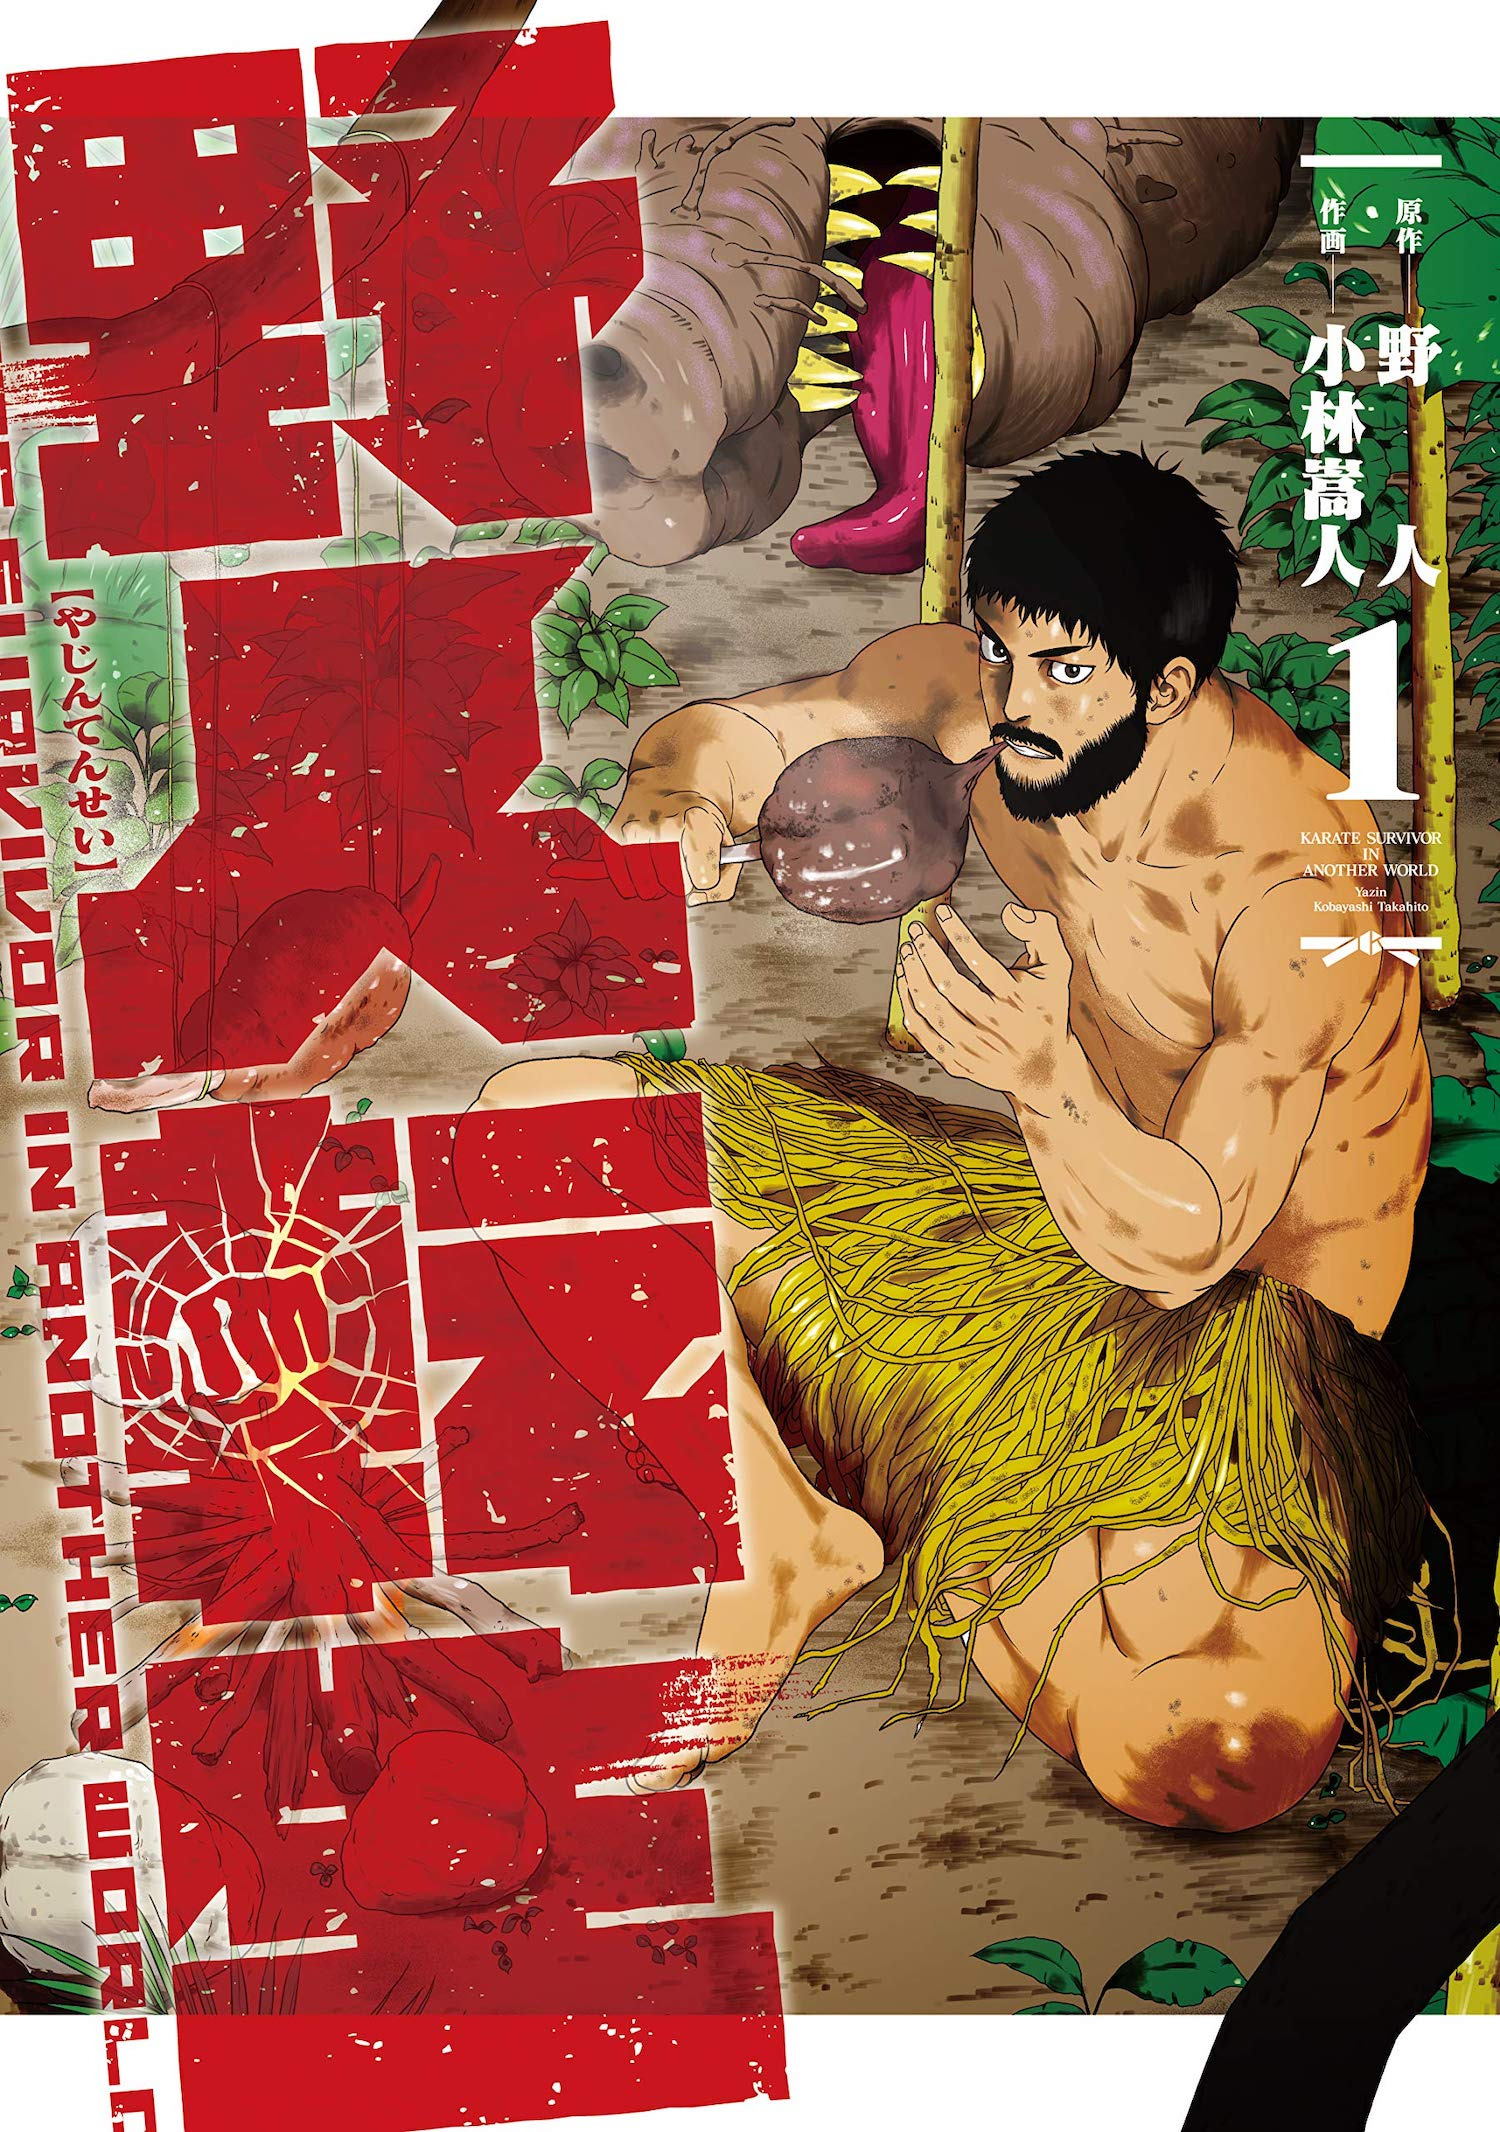 Karate Survivor in Another World Manga Volume 1